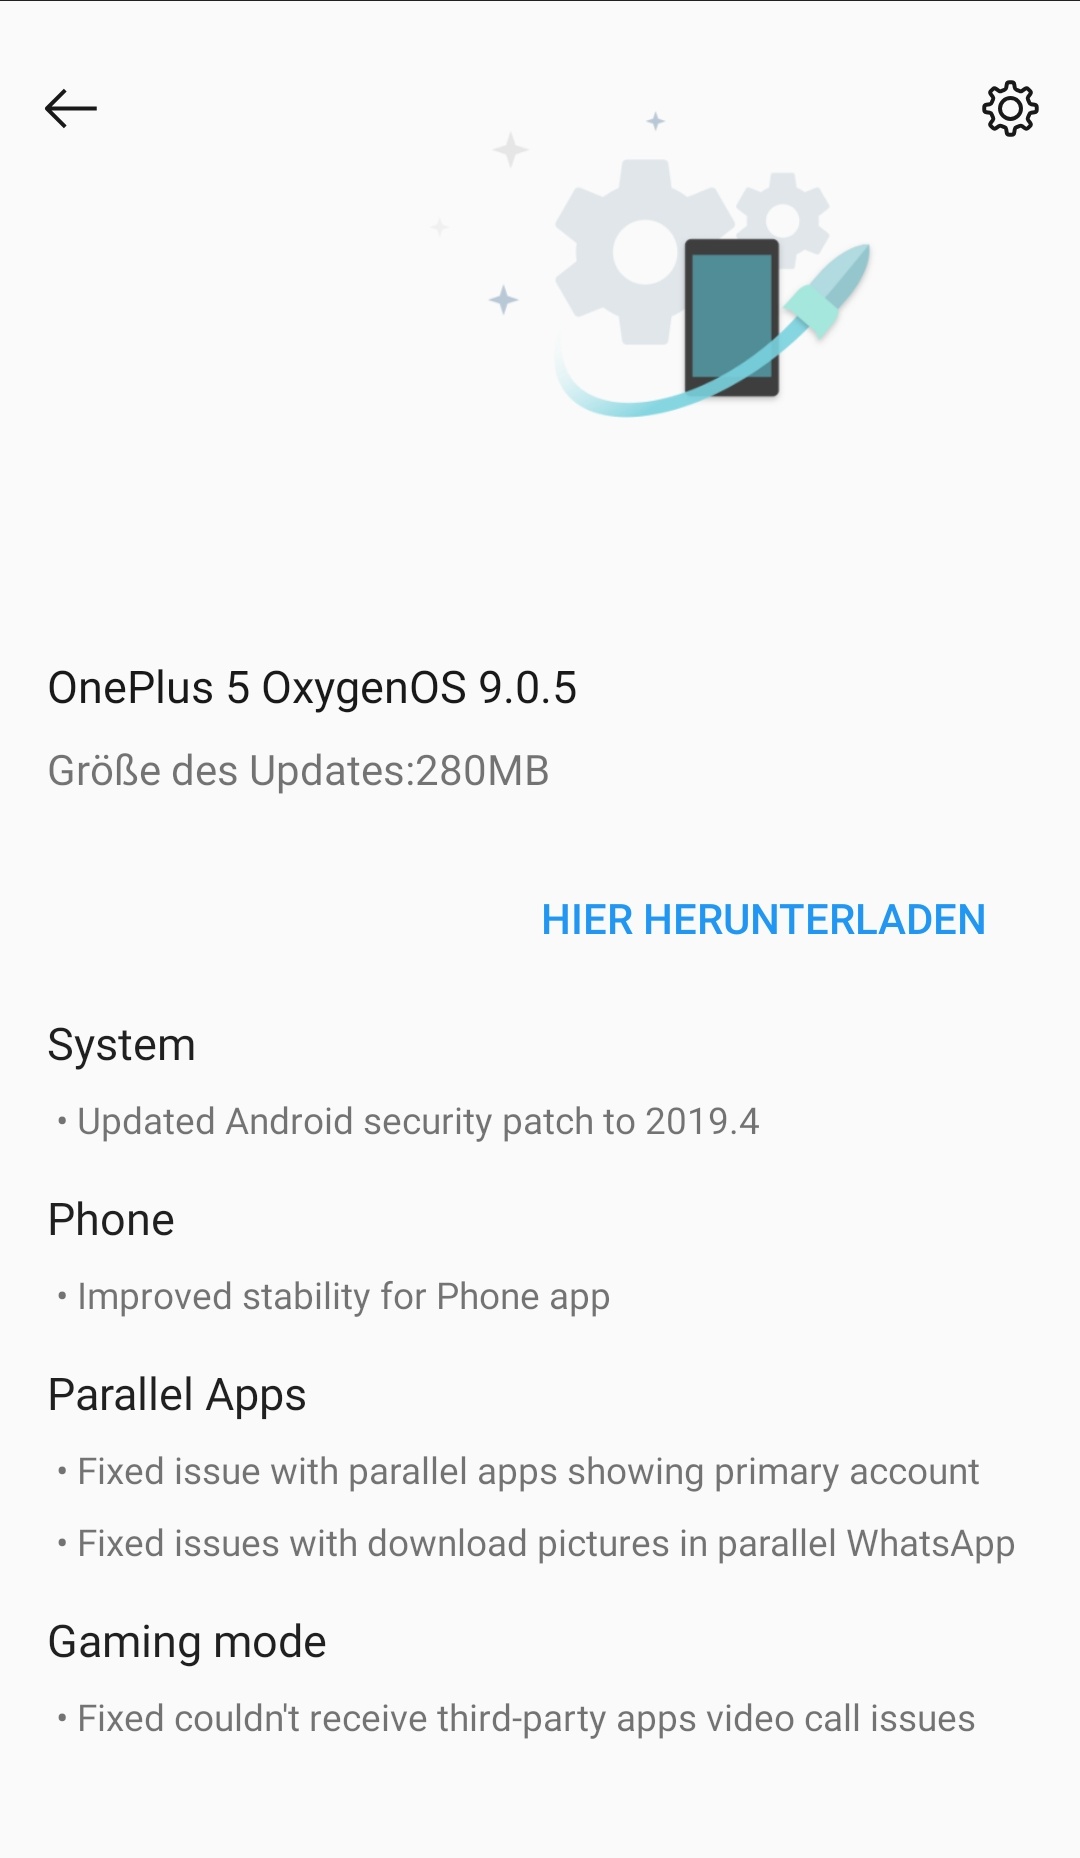 Oneplus 5 - OxygenOS 9.0.5